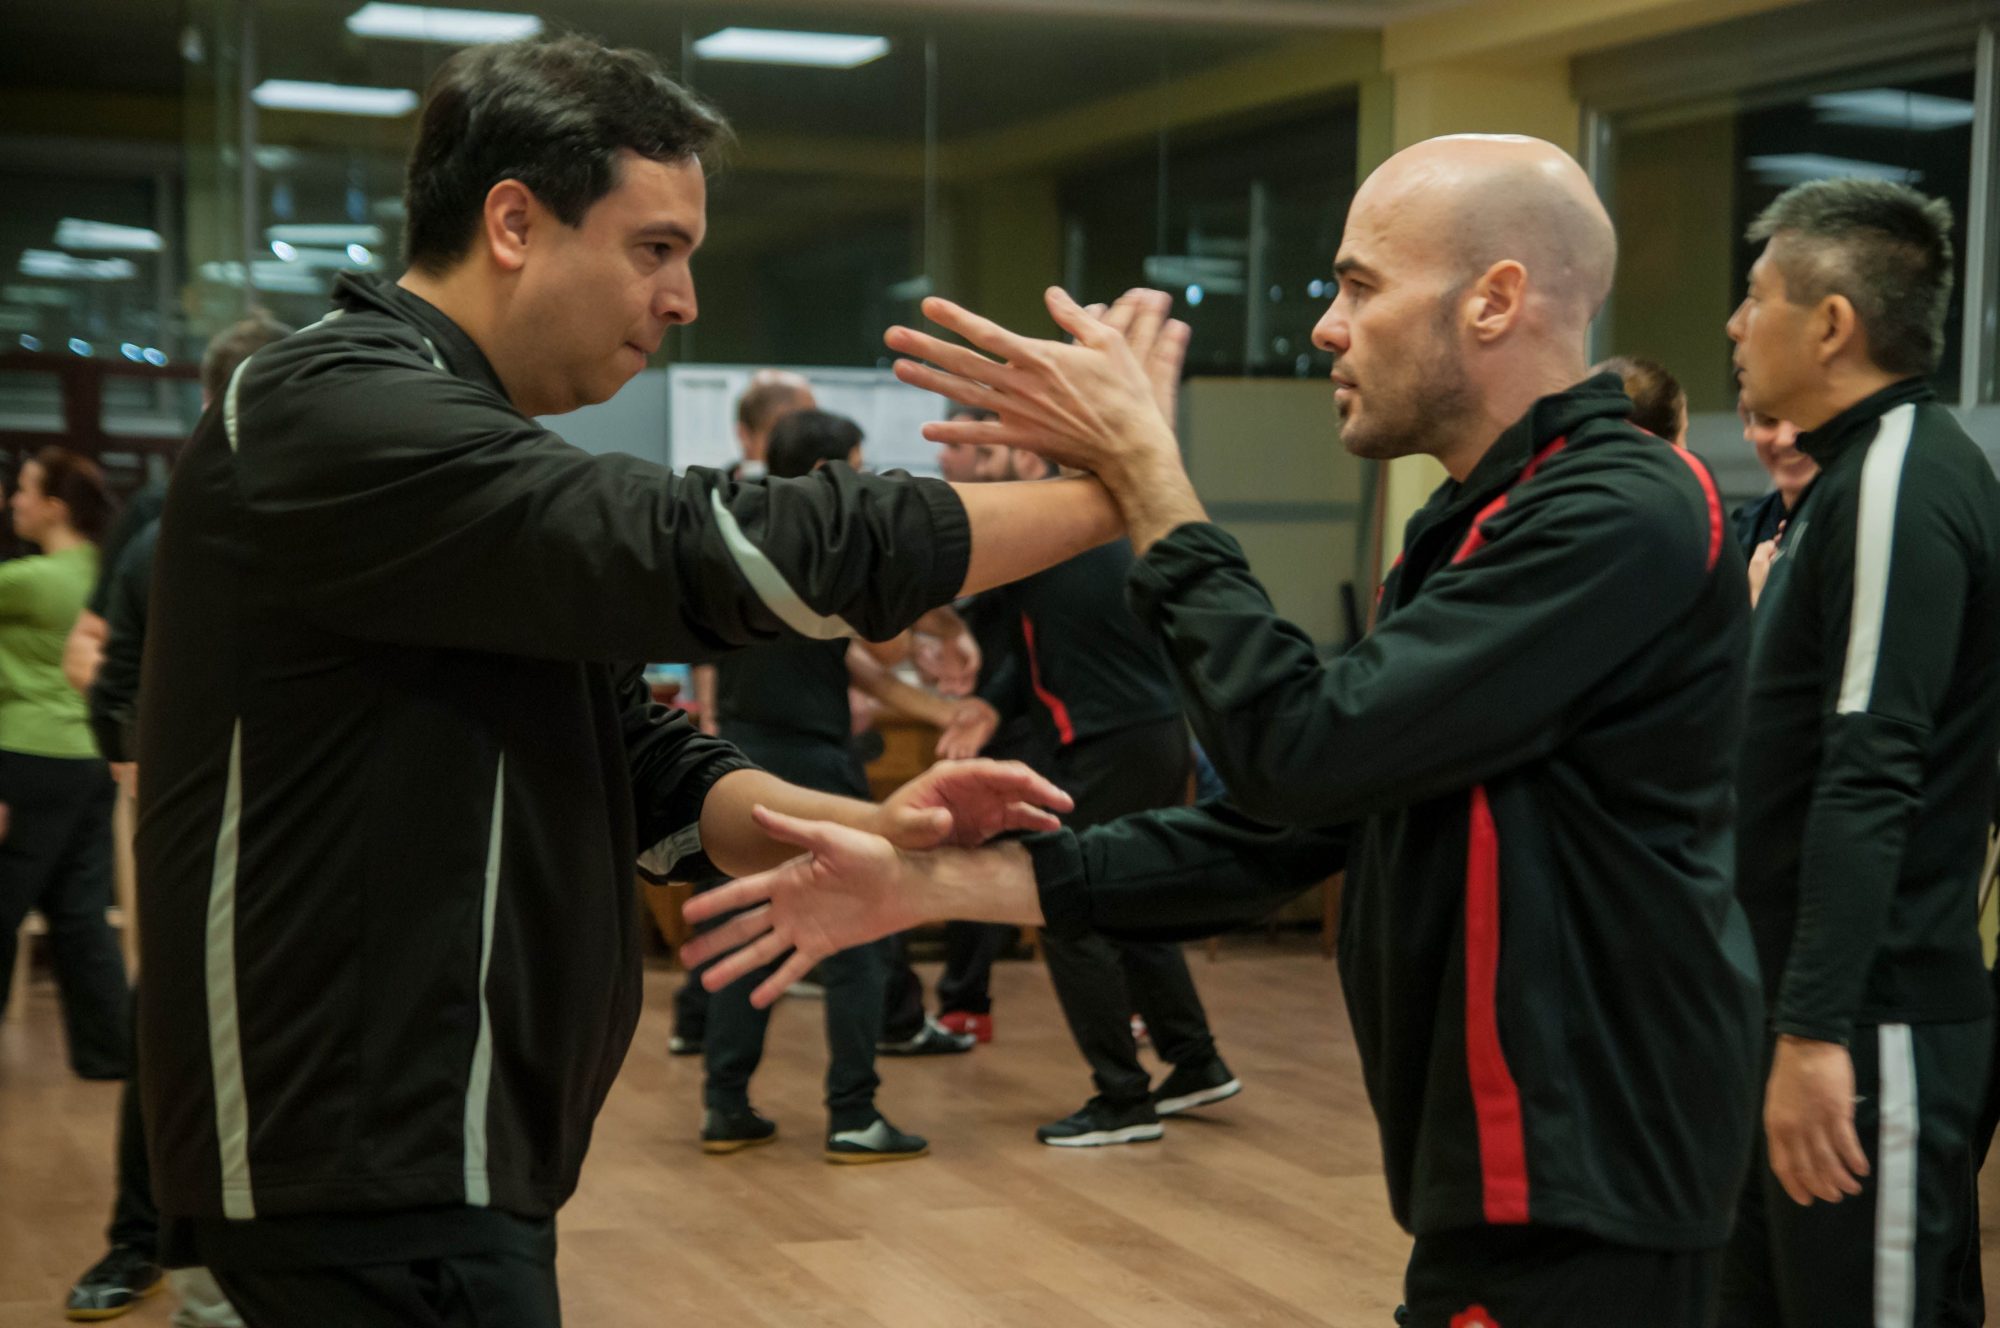 Escuela de Wing Chun España. Desarrolla tus capacidades físicas, mentales y emocionales a través de practicar Wing Chun en el centro de formación del Maestro Marcelo Navarro.